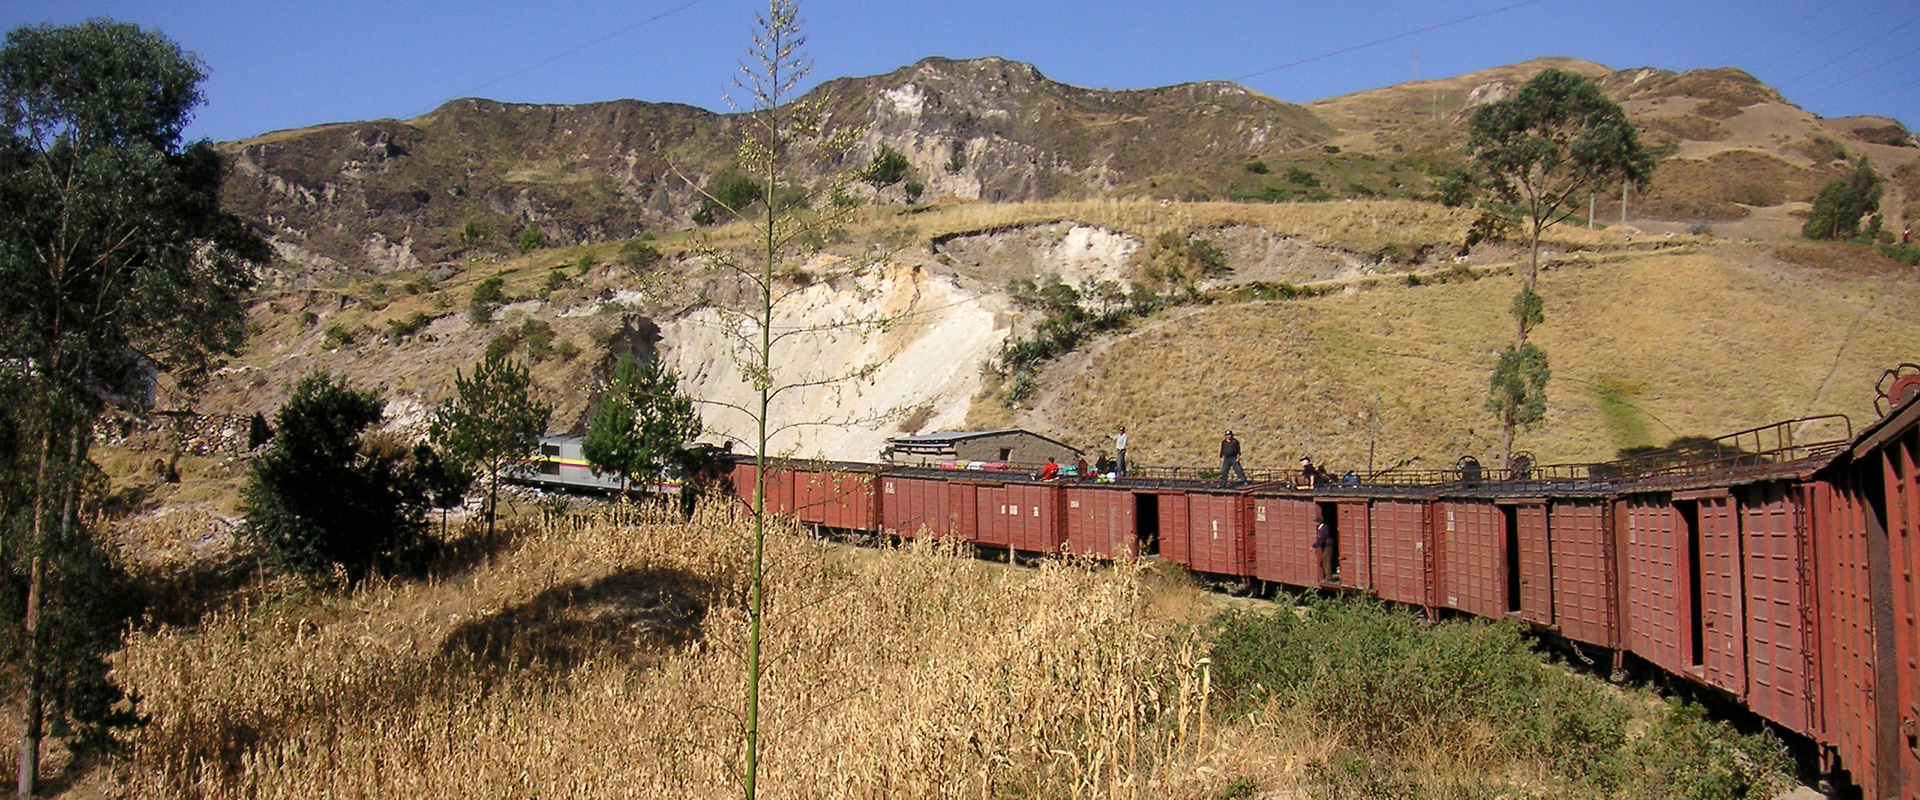 Ecuador Andes Train Landscape